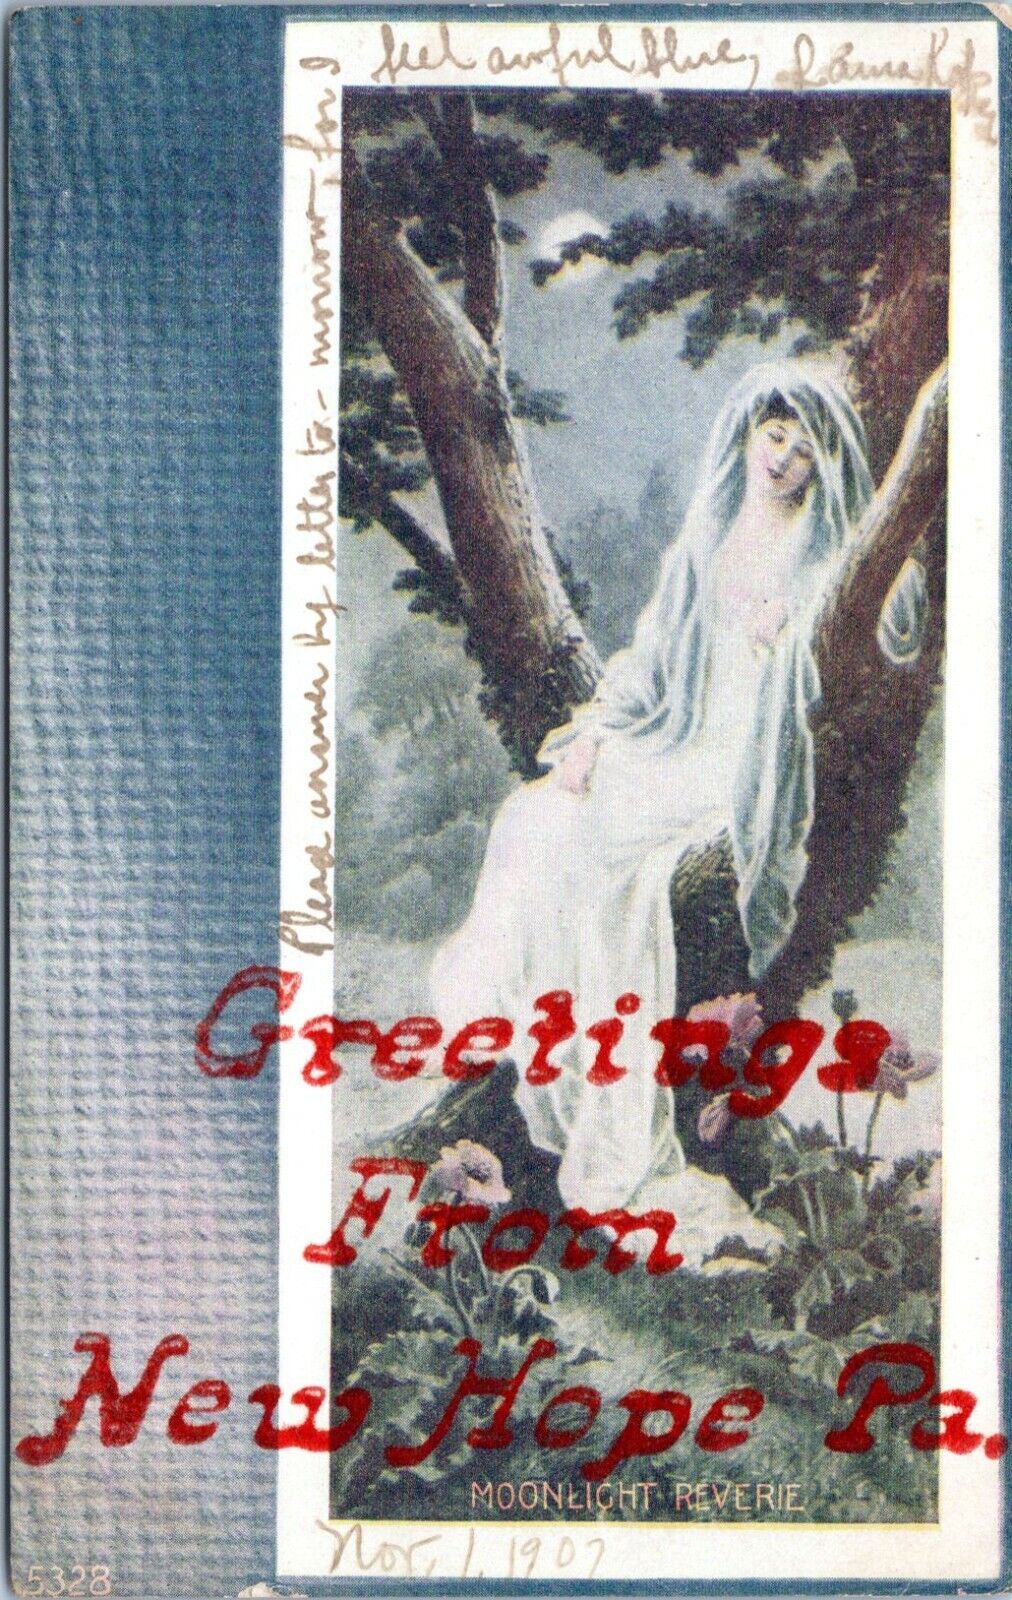 New Hope Pennsylvania Postcard Greetings From Moonlight Reverie Postmark 1907 JV